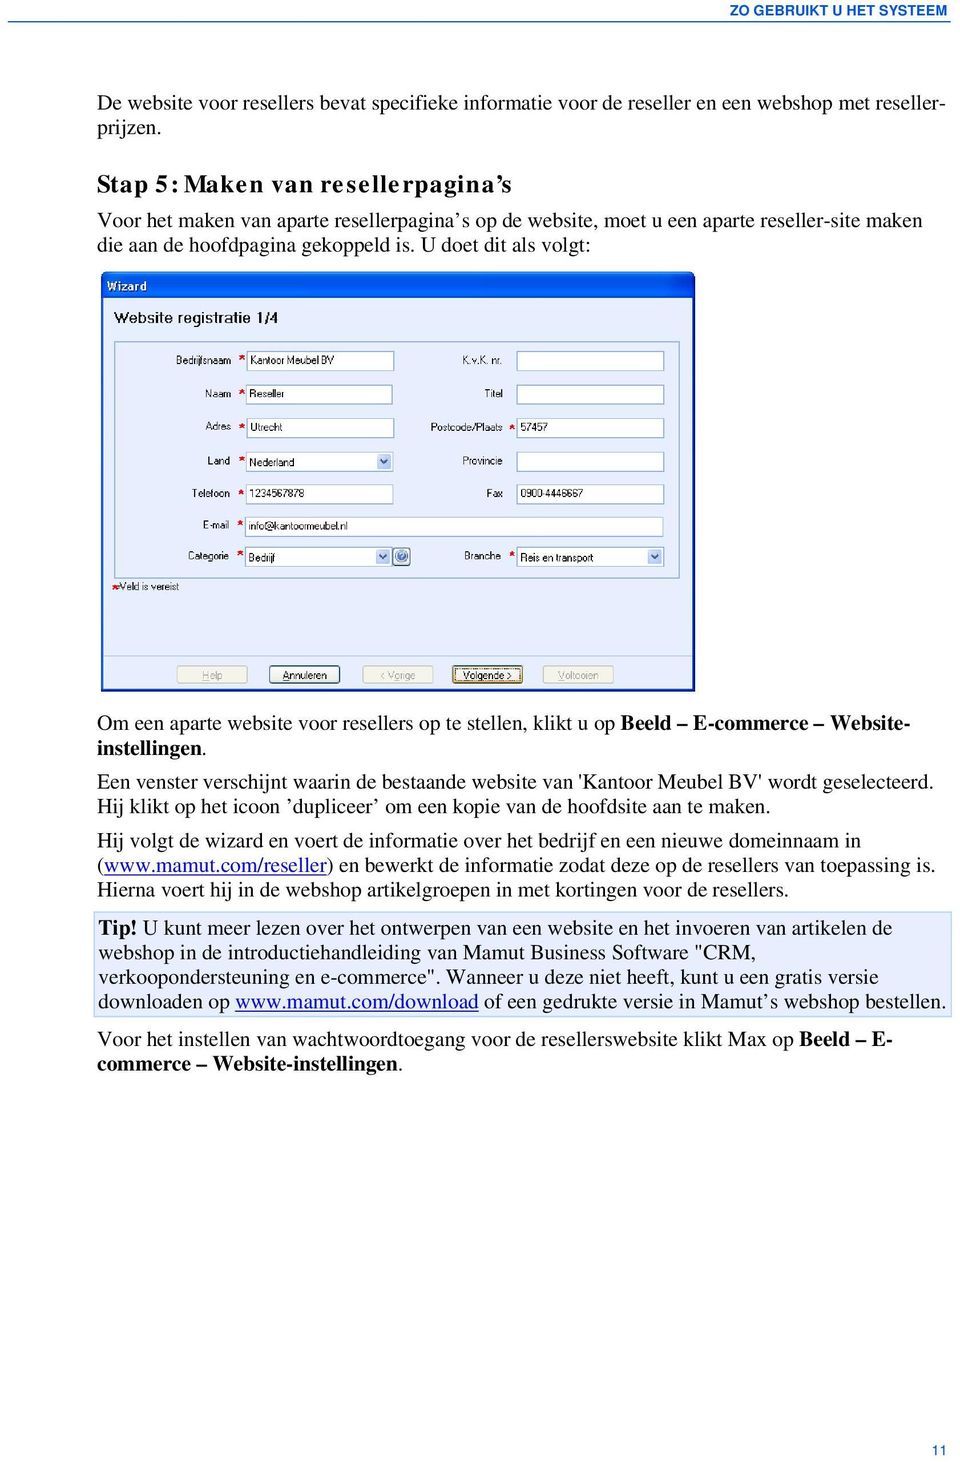 U doet dit als volgt: Om een aparte website voor resellers op te stellen, klikt u op Beeld E-commerce Websiteinstellingen.